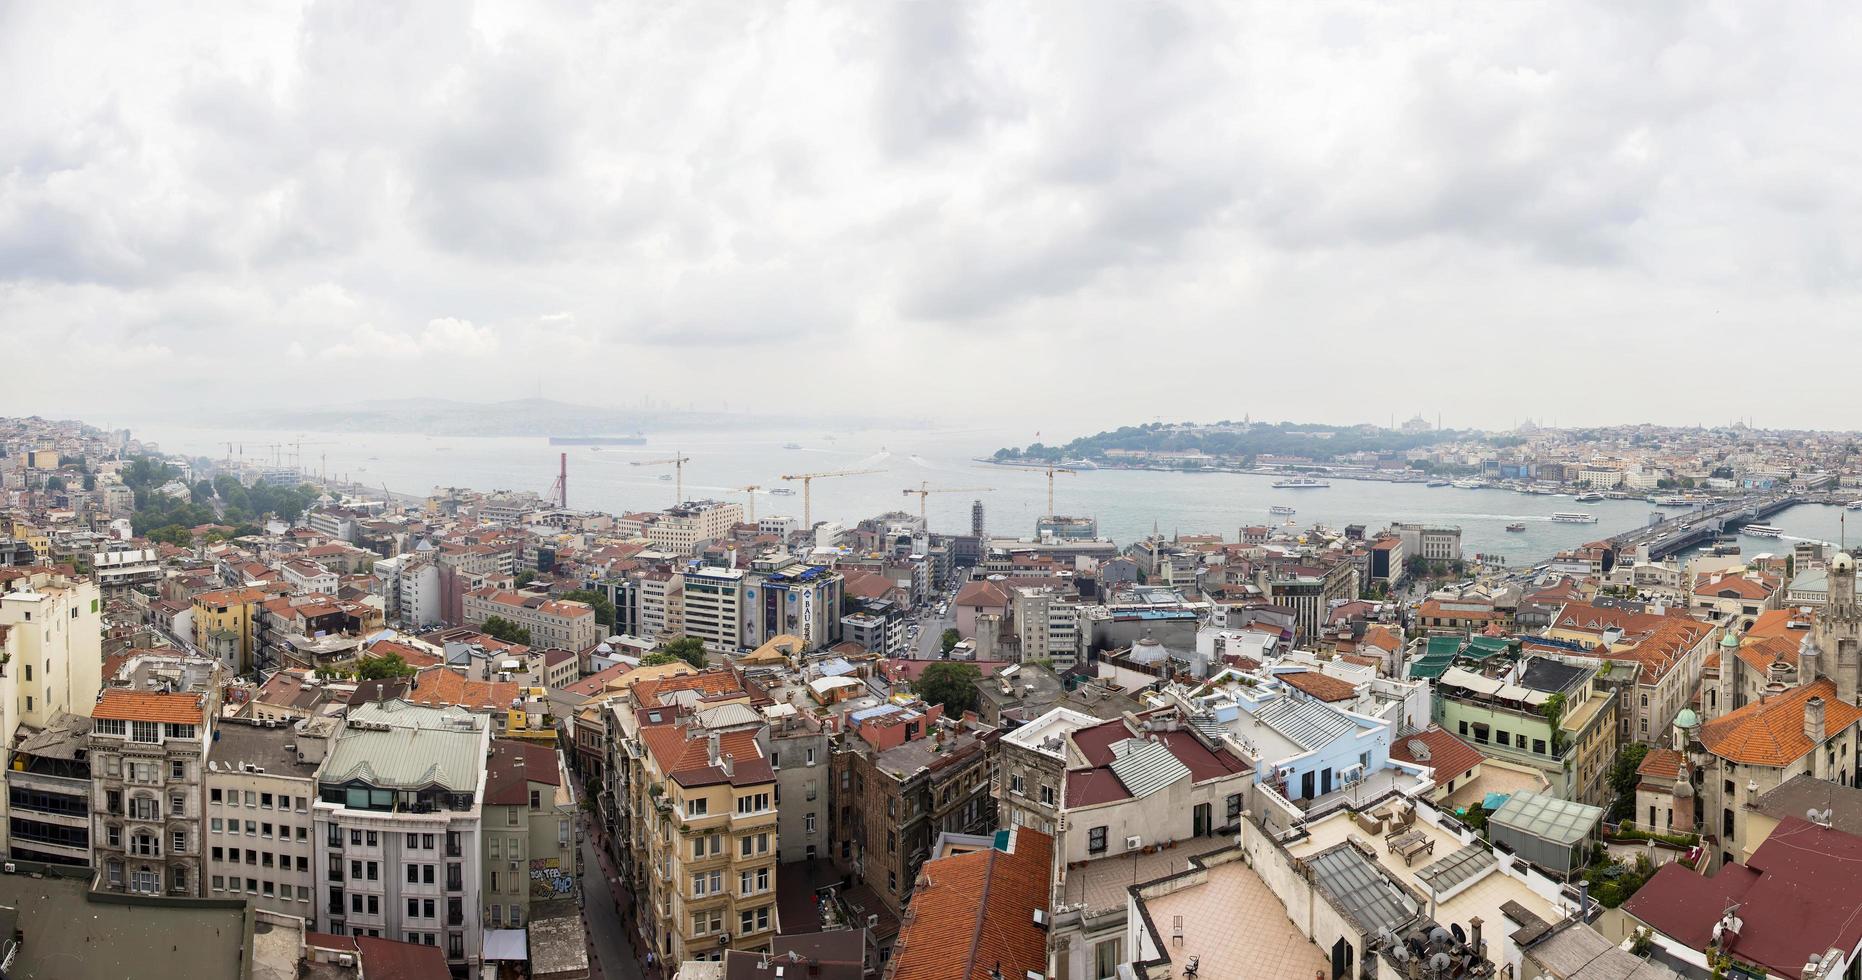 istanbul, turkije, 21 juni 2019 - luchtfoto van huizen en openbare gebouwen in istanbul, turkije. istanbul is een grote stad in turkije met meer dan 15 miljoen inwoners. foto